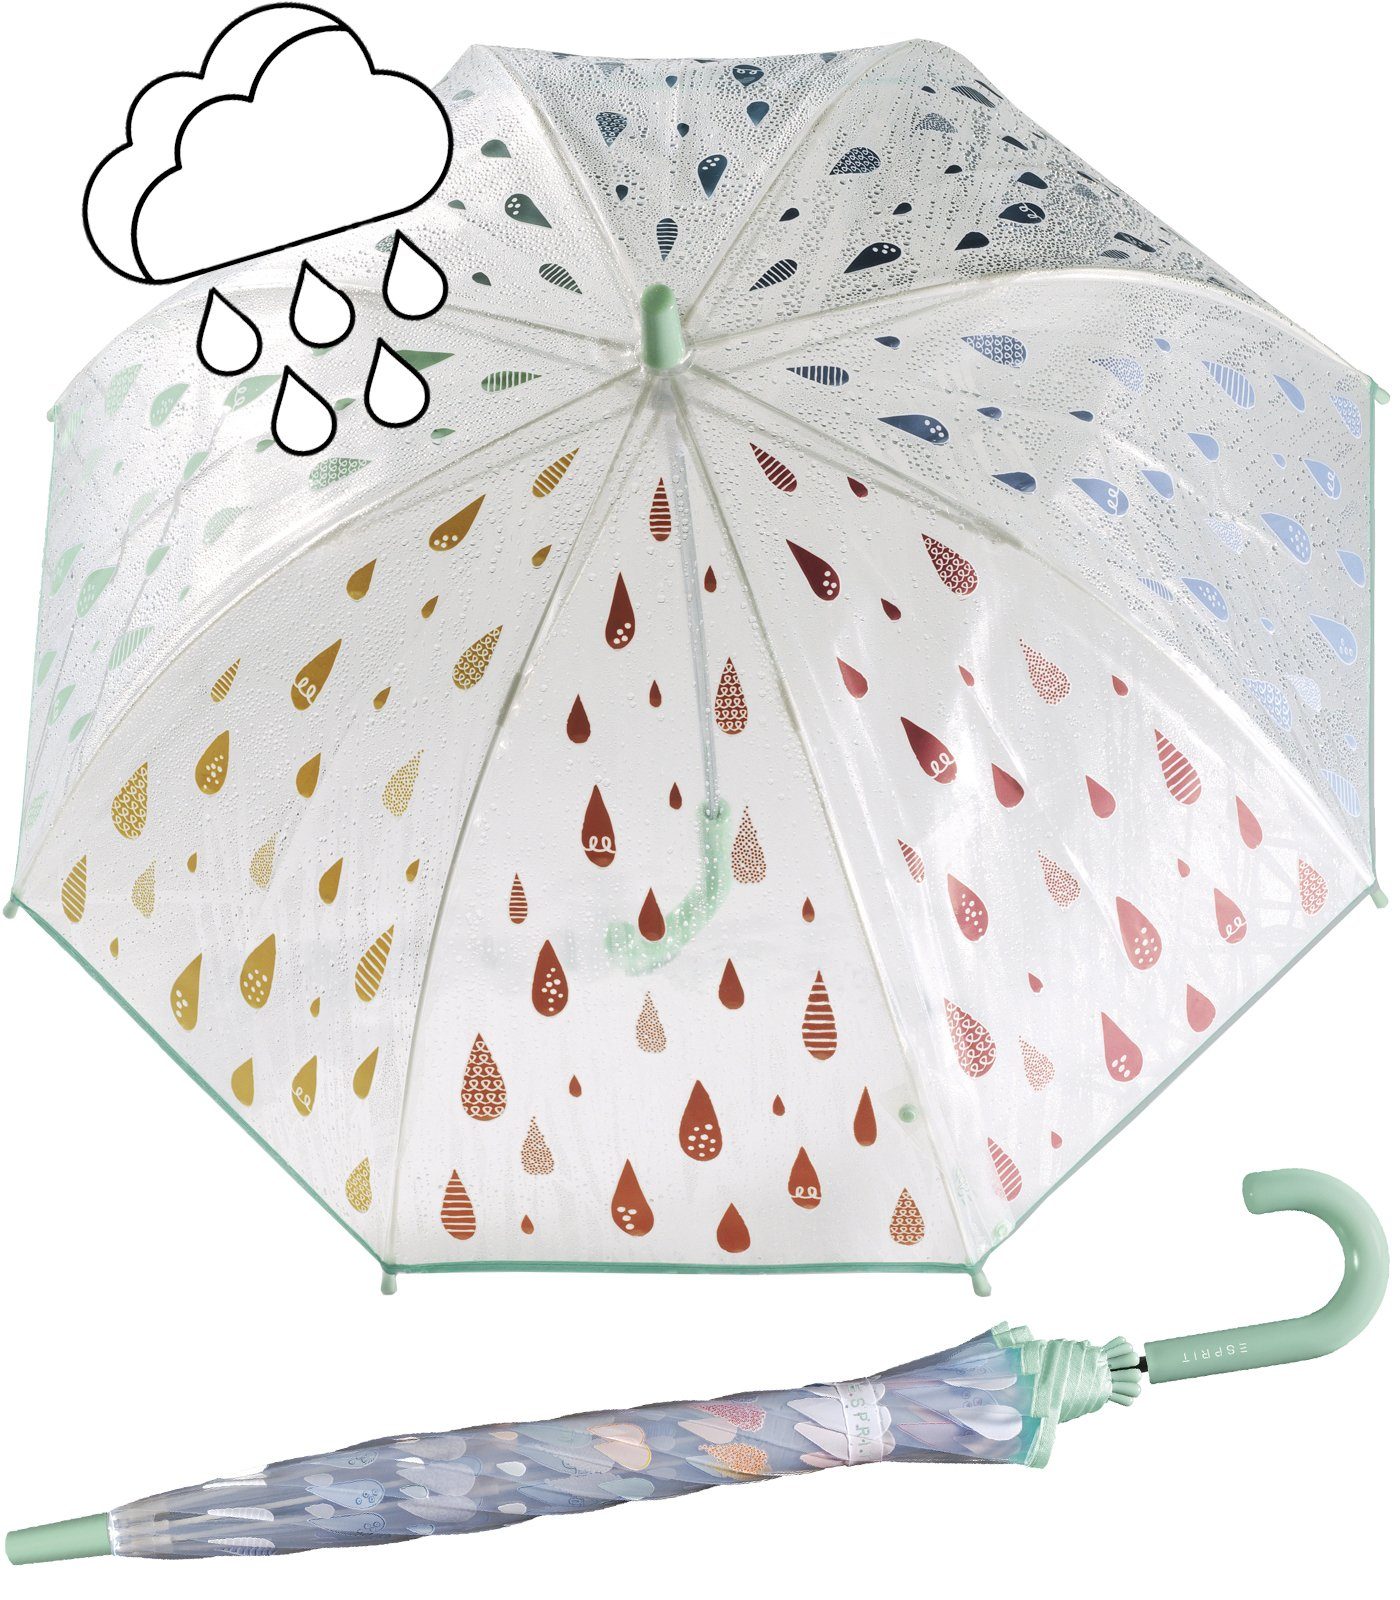 Esprit Stockregenschirm transparenter Glockenschirm für Kinder, die Tropfen  färben sich bei Regen bunt, Regenschirm für Mädchen der Marke Esprit, Typ  Kinder-Stockschirm mit